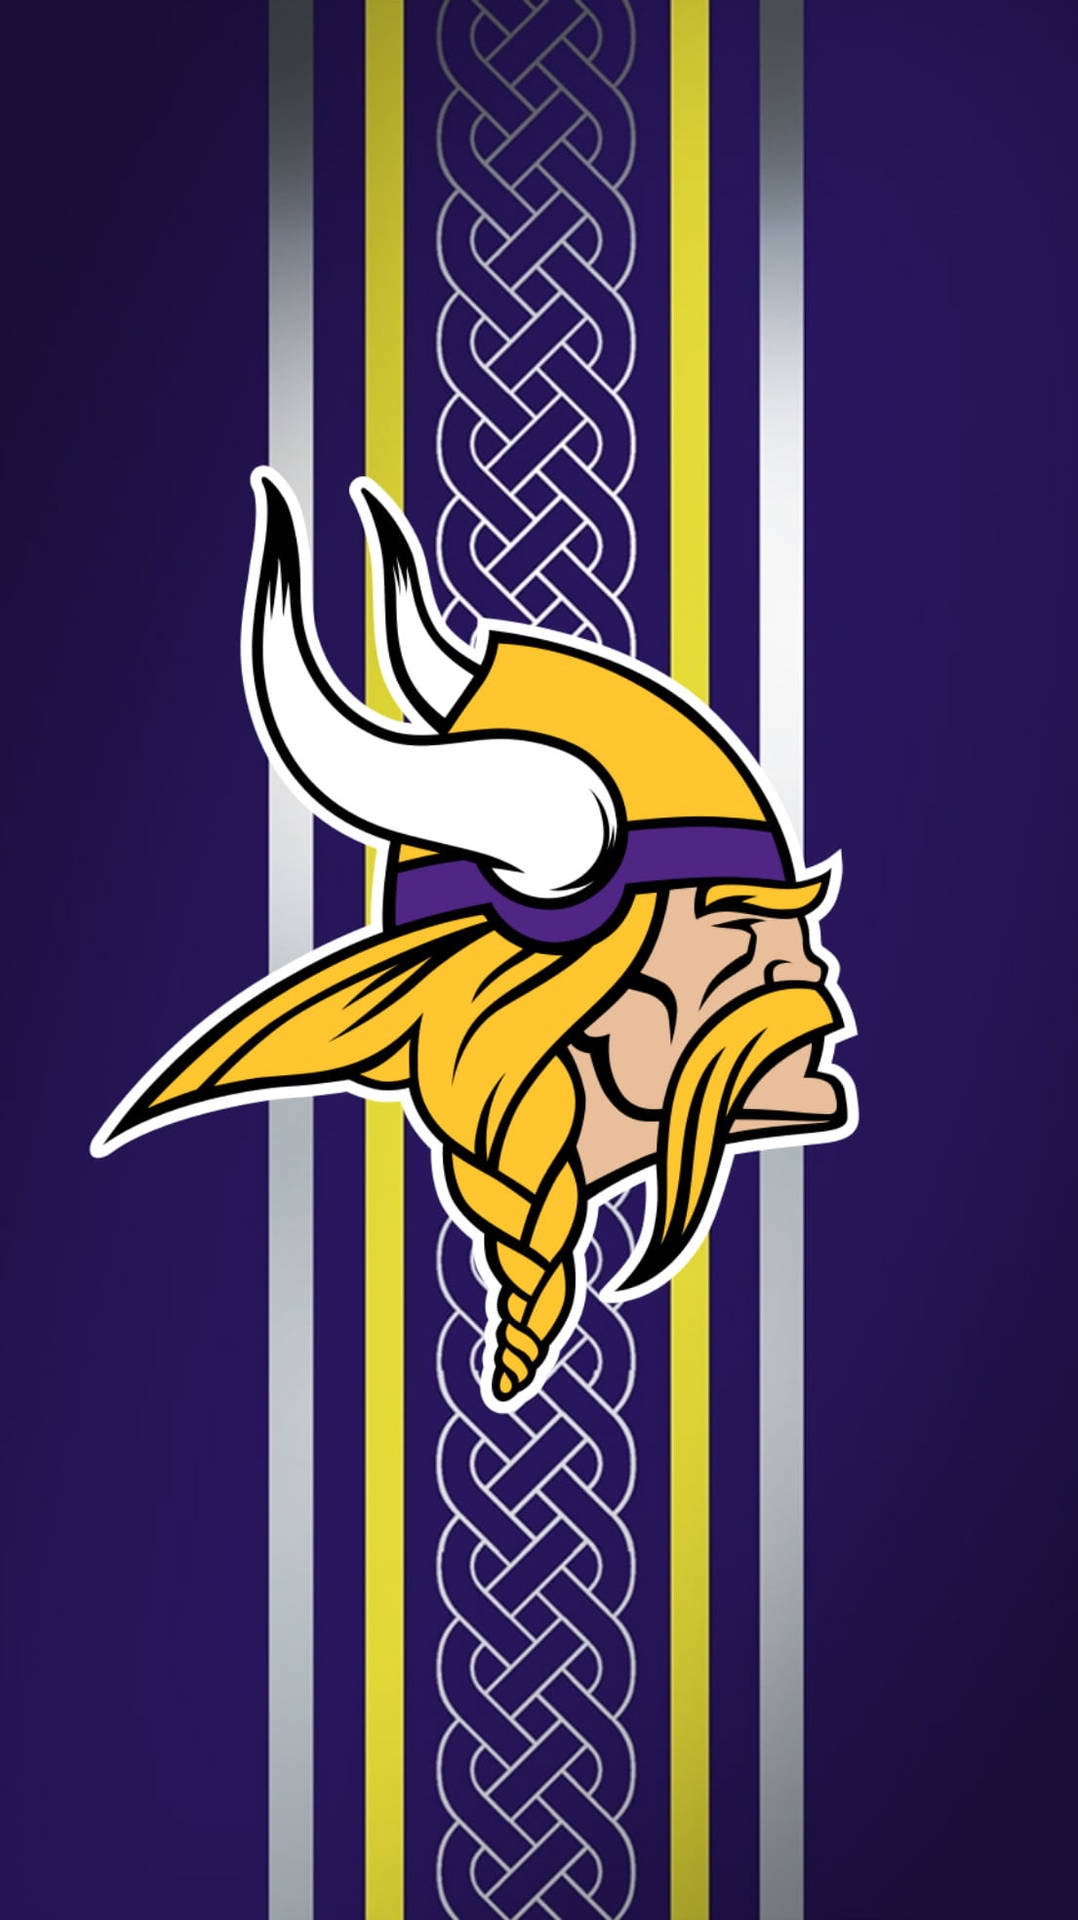 Vikings Nfl Team Logo Background